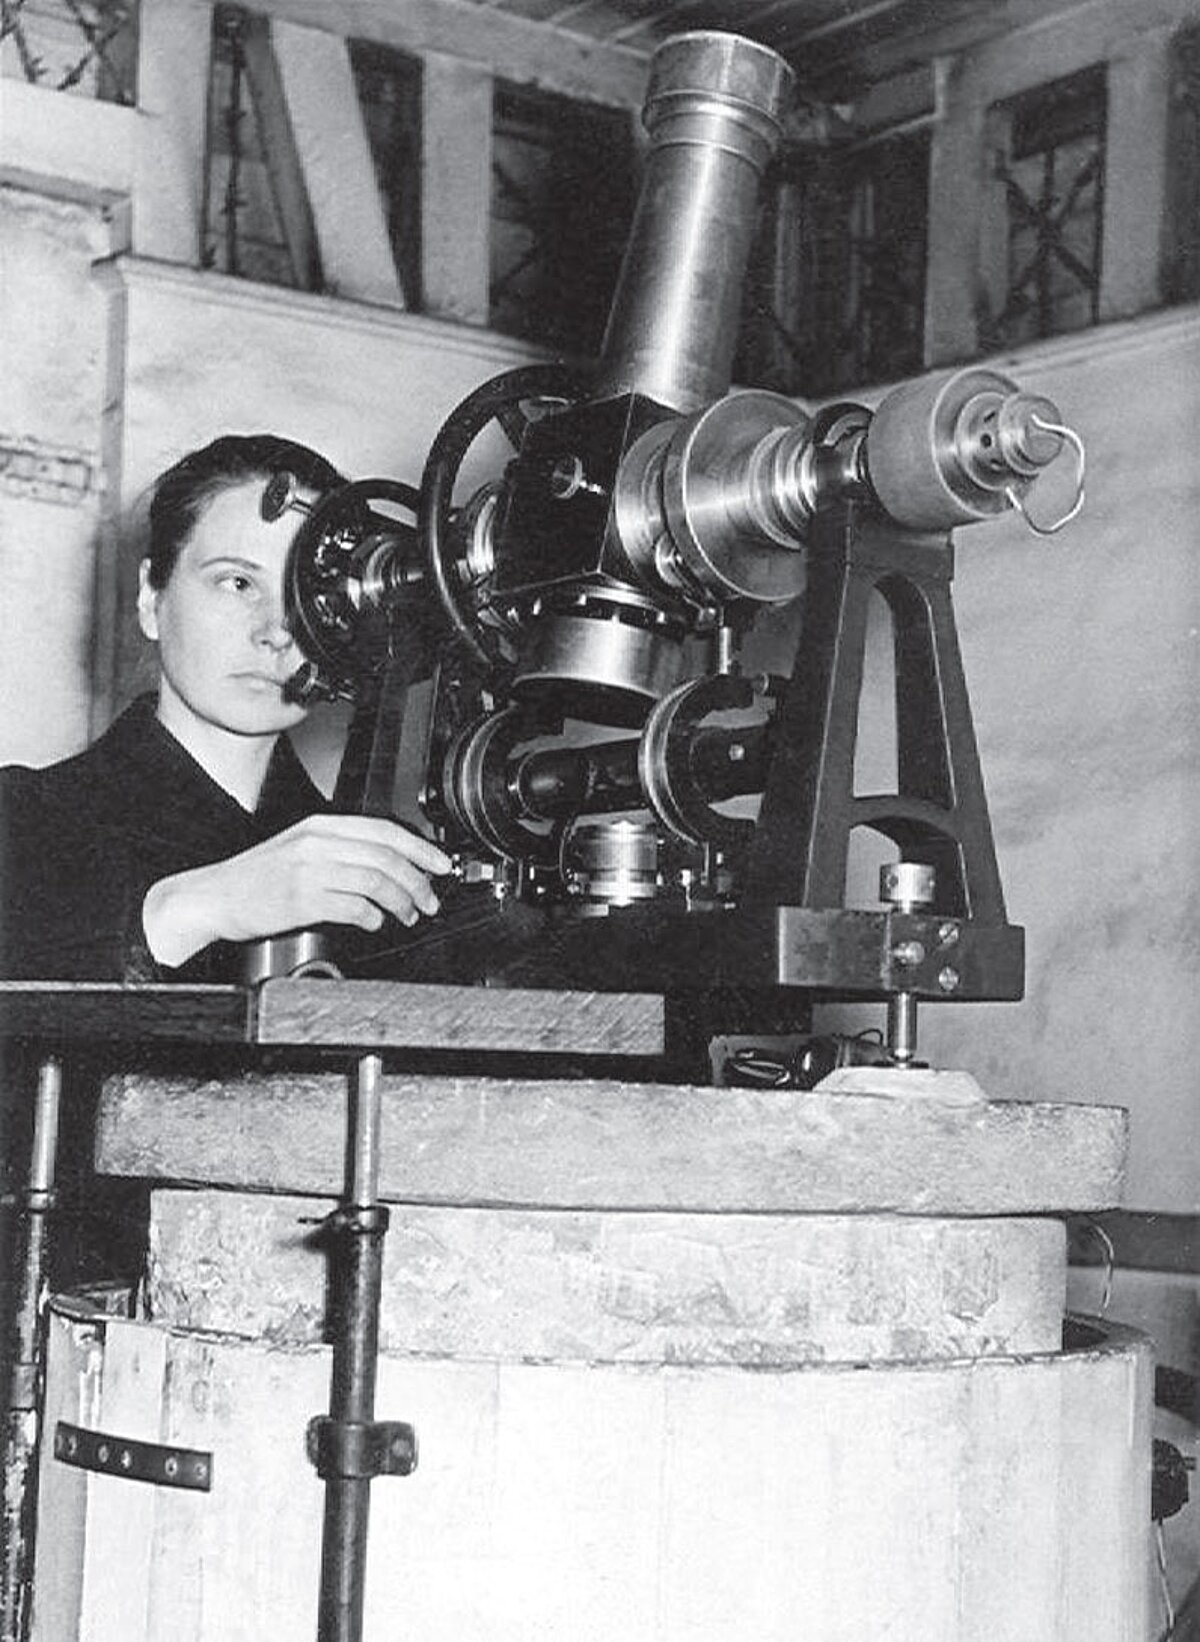 Elga Kaupuša veic novērojumus ar Askania Werke pasāžinstrumentu 1958. gadā. No žurnāla Zvaigžņotā Debess